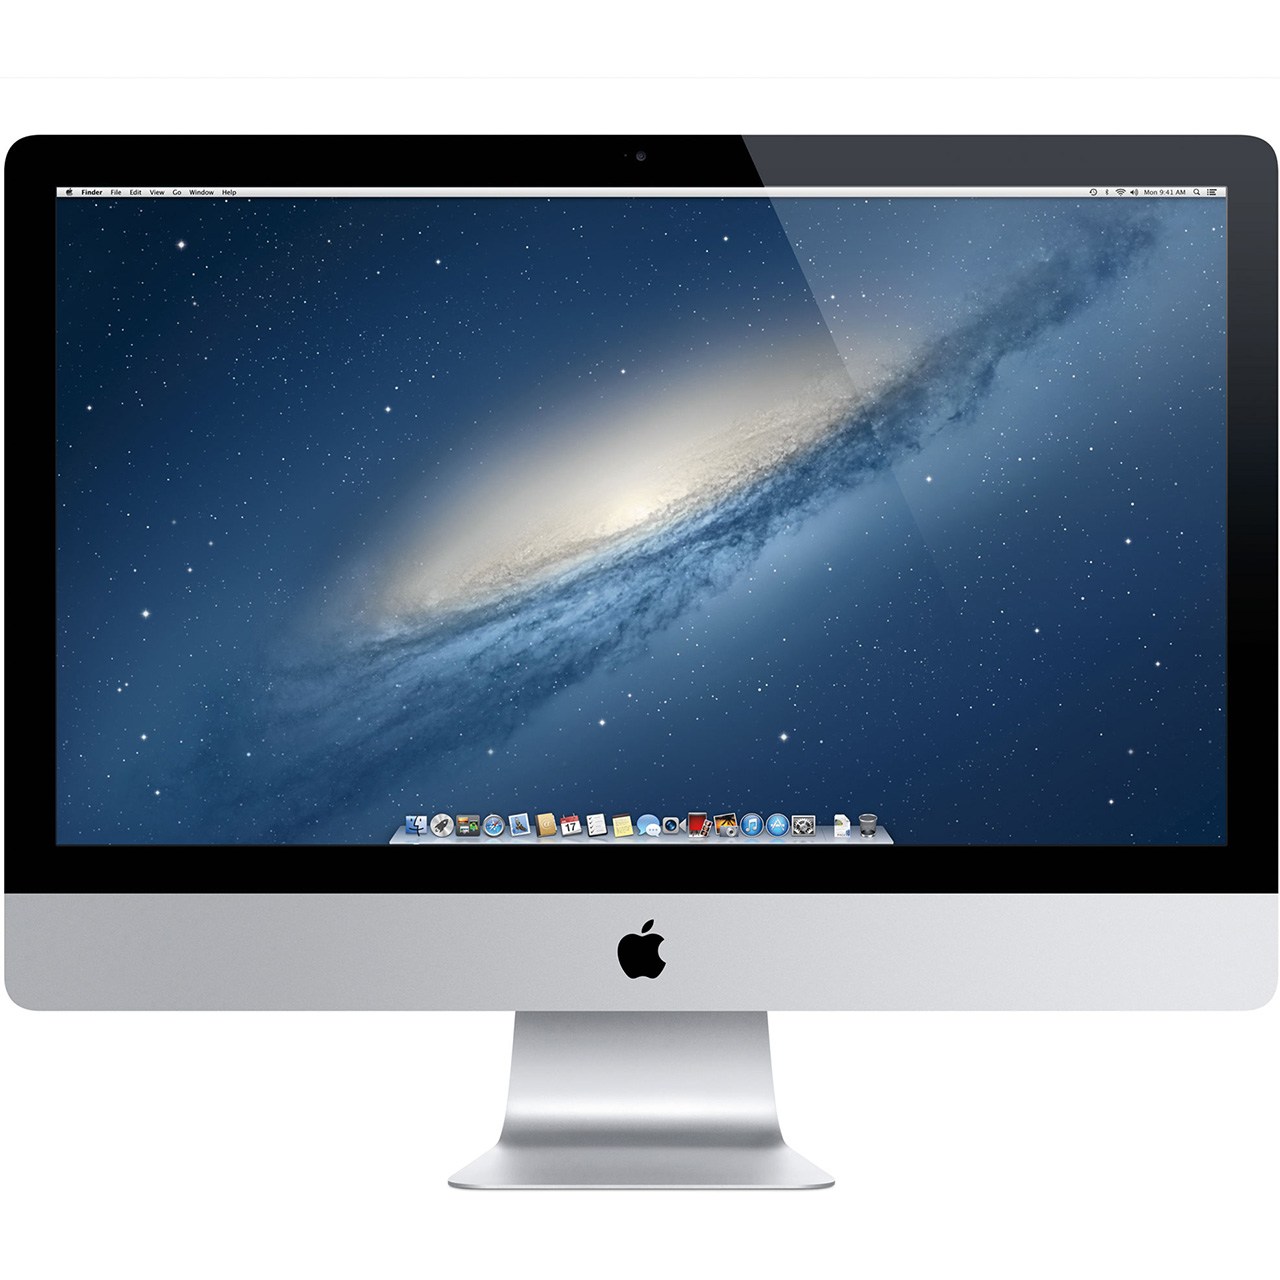 کامپیوتر همه کاره 21.5 اینچی اپل مدل iMac MK452 2015 با صفحه نمایش رتینا 4K